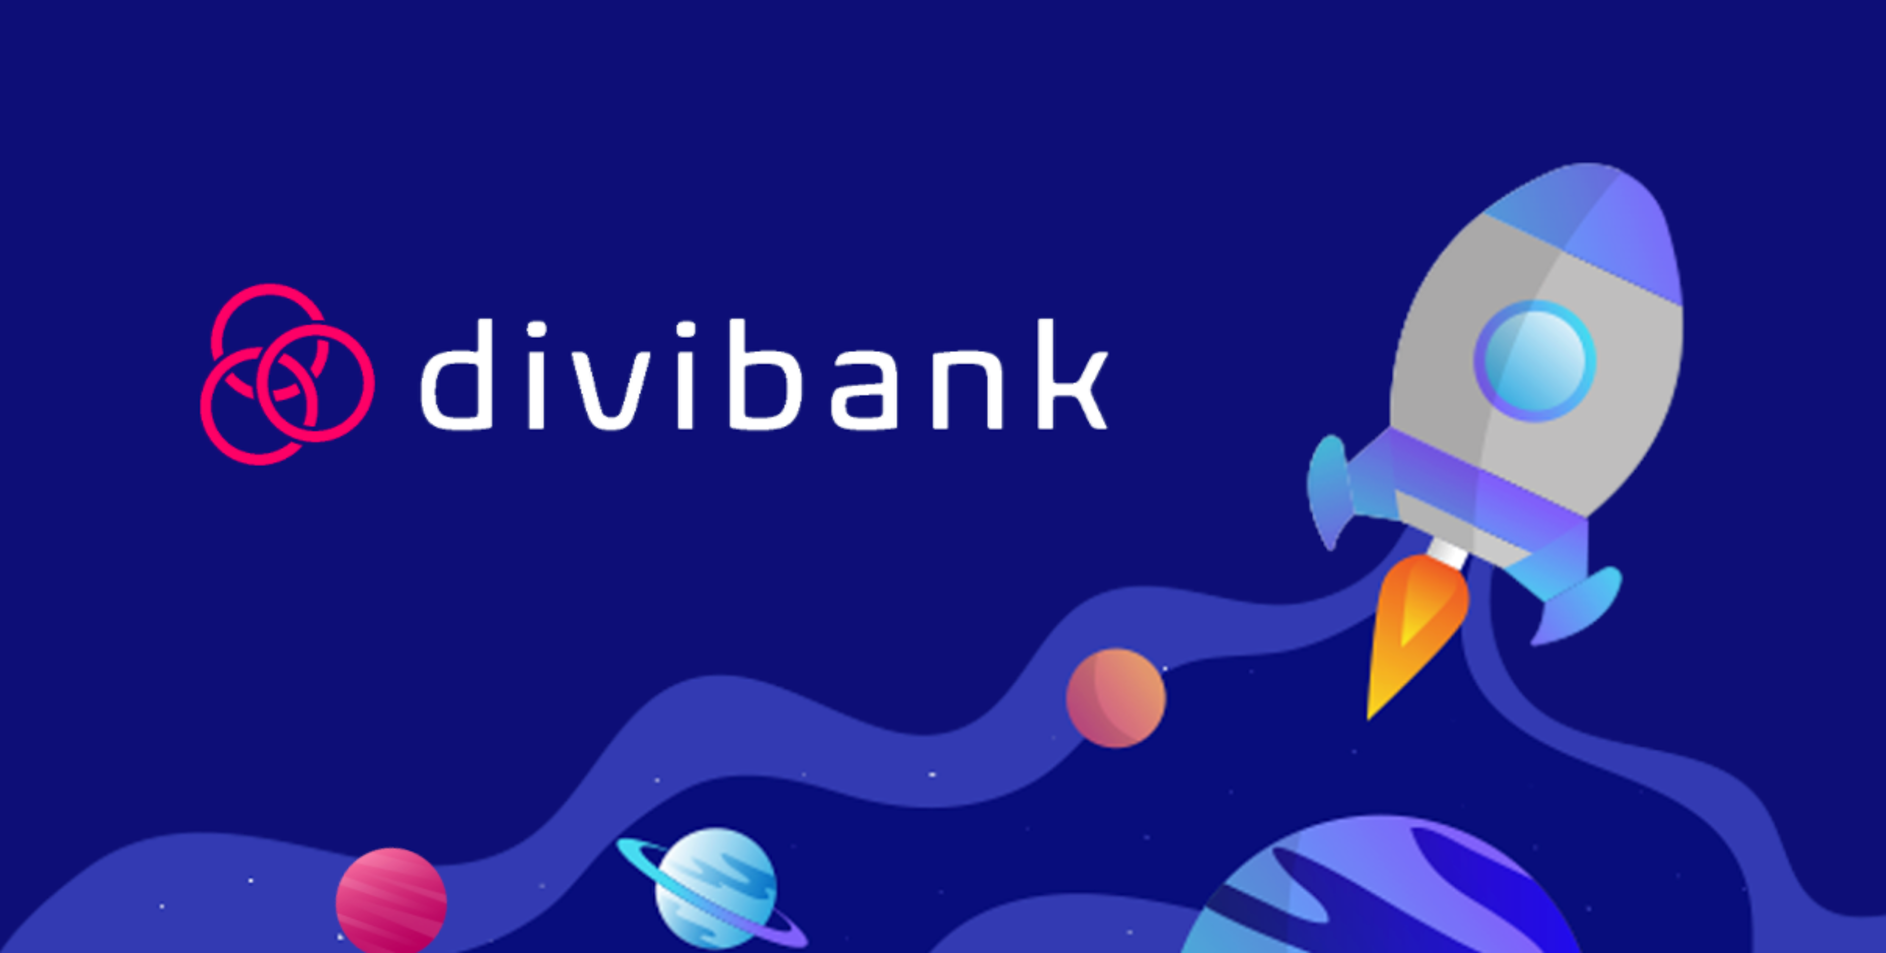 Divibank é confiável?